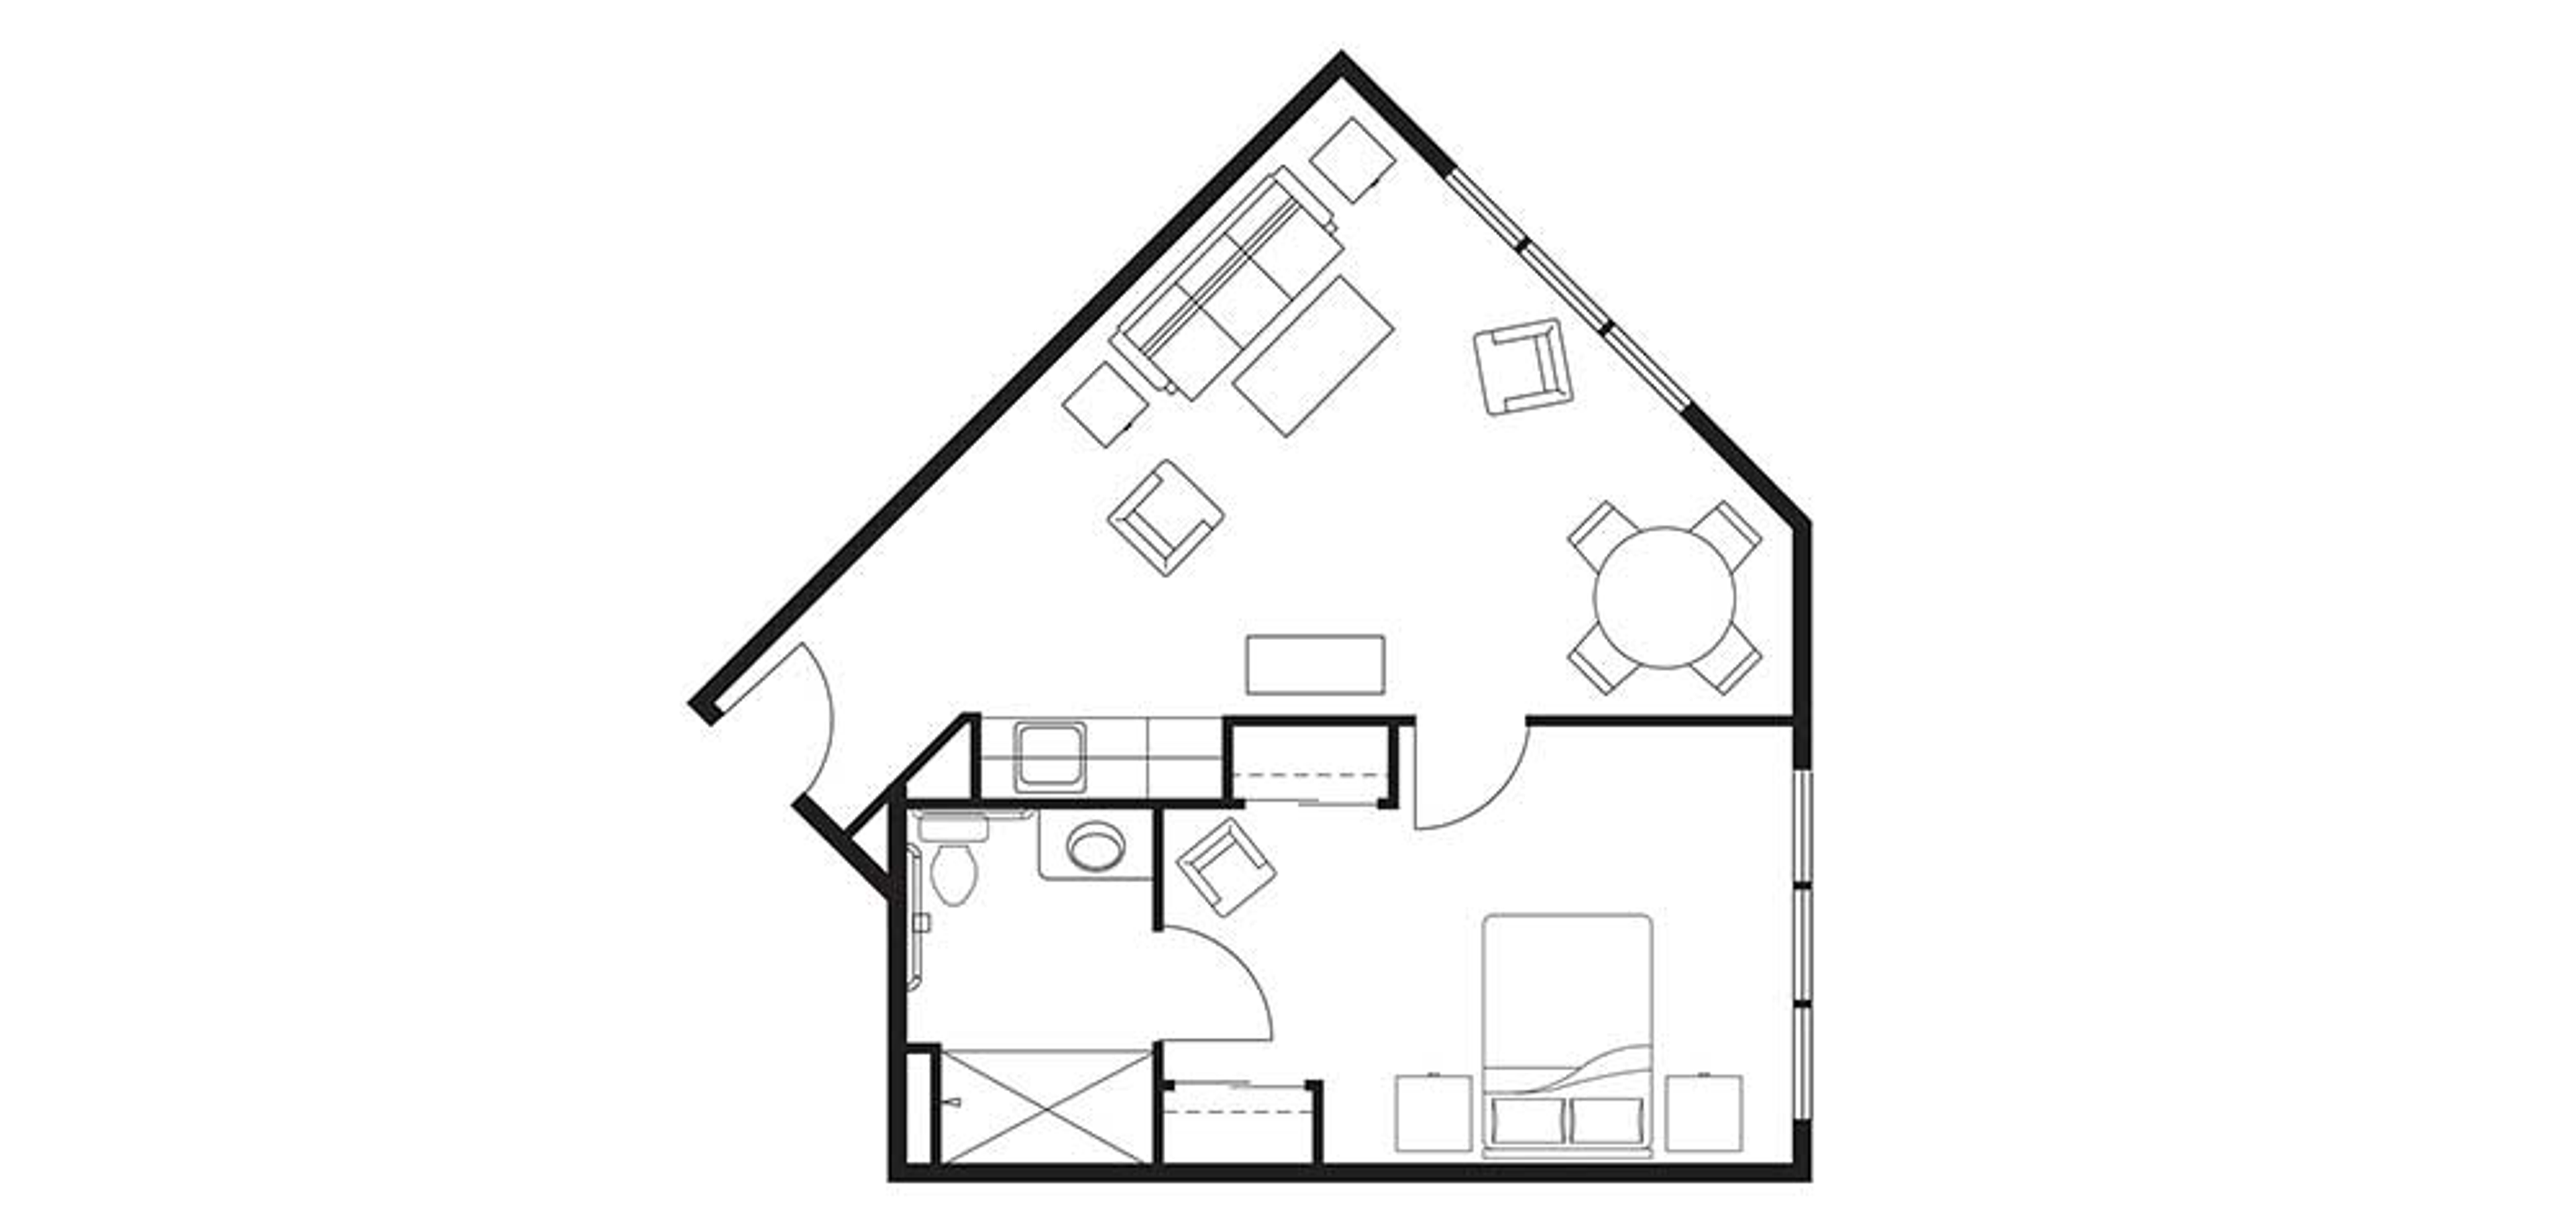 Floorplan Ocean Ridge Assisted Living One Bedroom Large